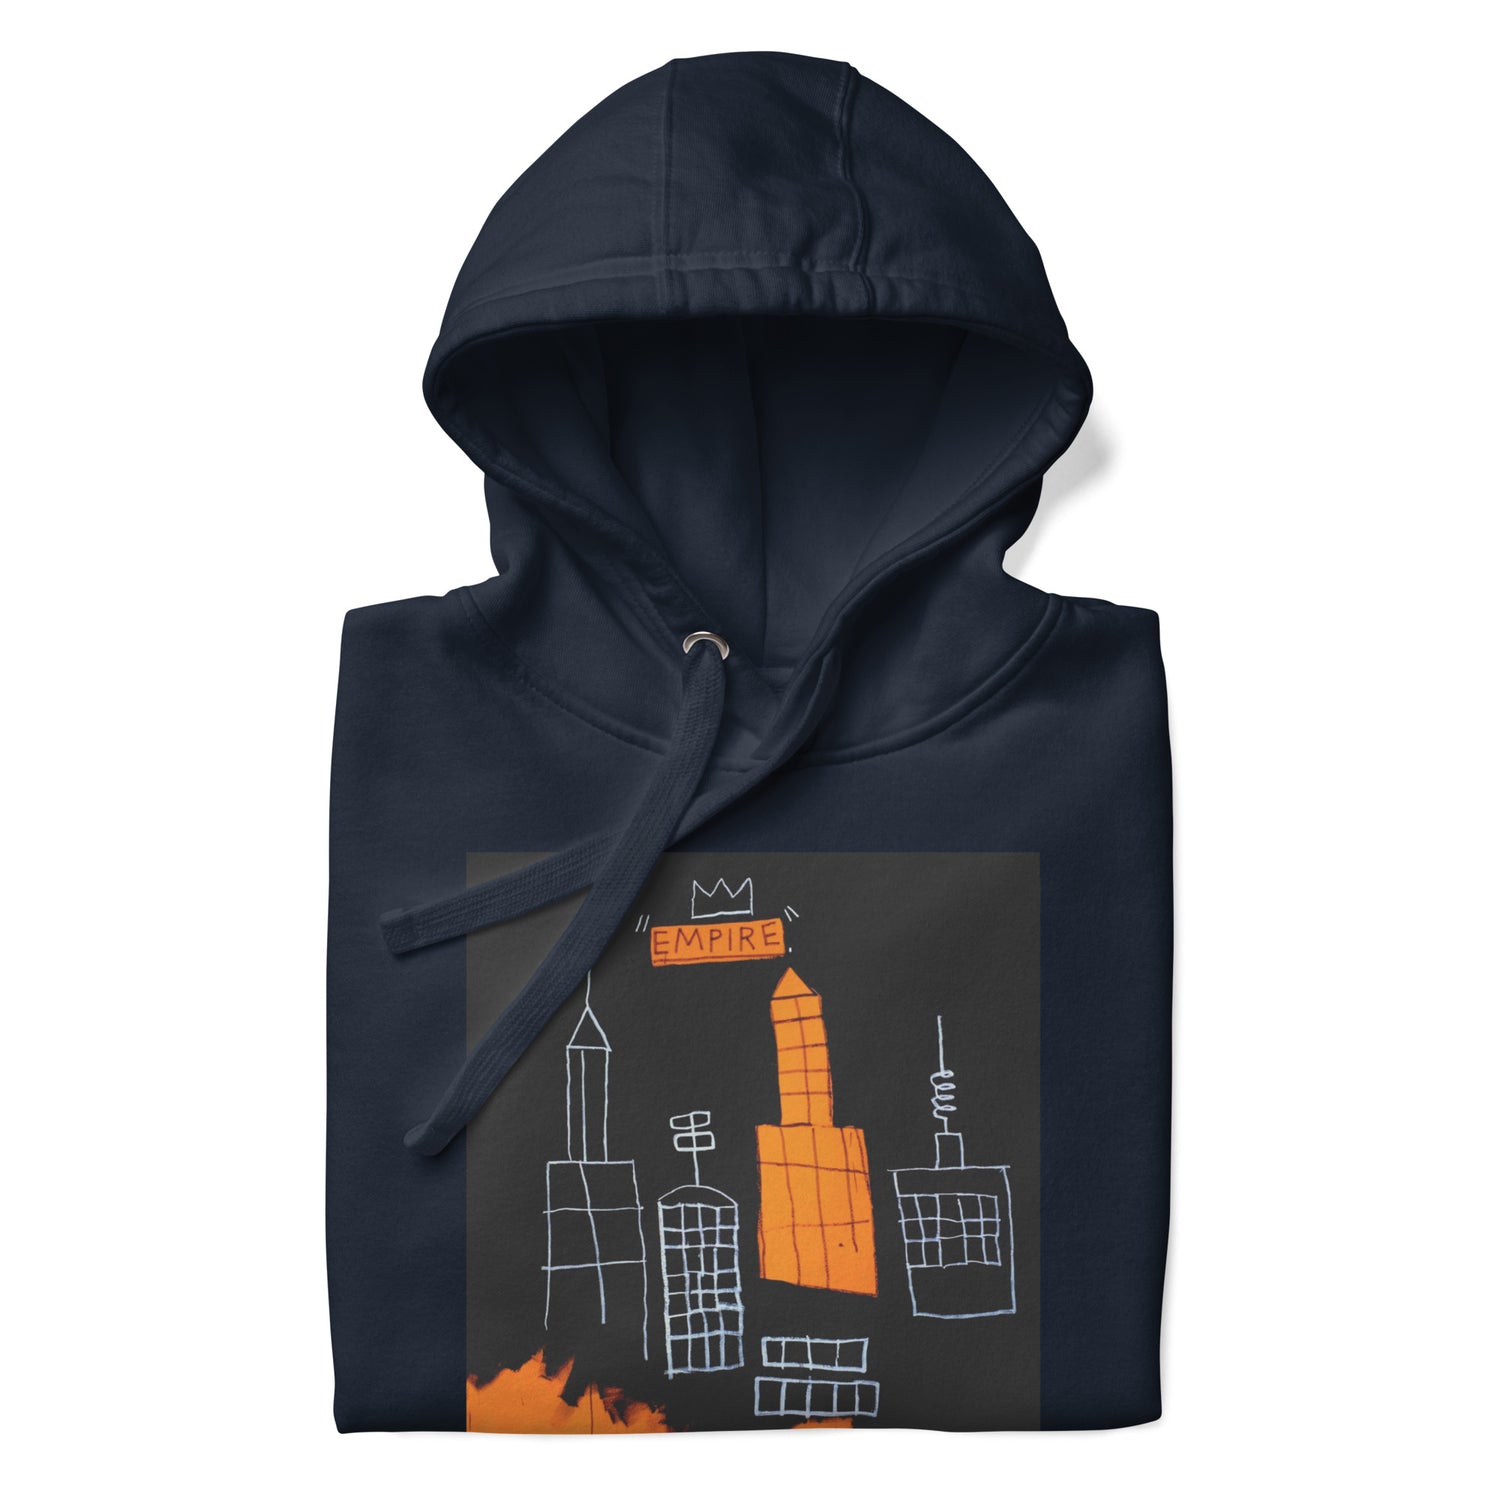 Jean-Michel Basquiat "Mecca" Artwork Printed Premium Streetwear Sweatshirt Hoodie Navy Blue